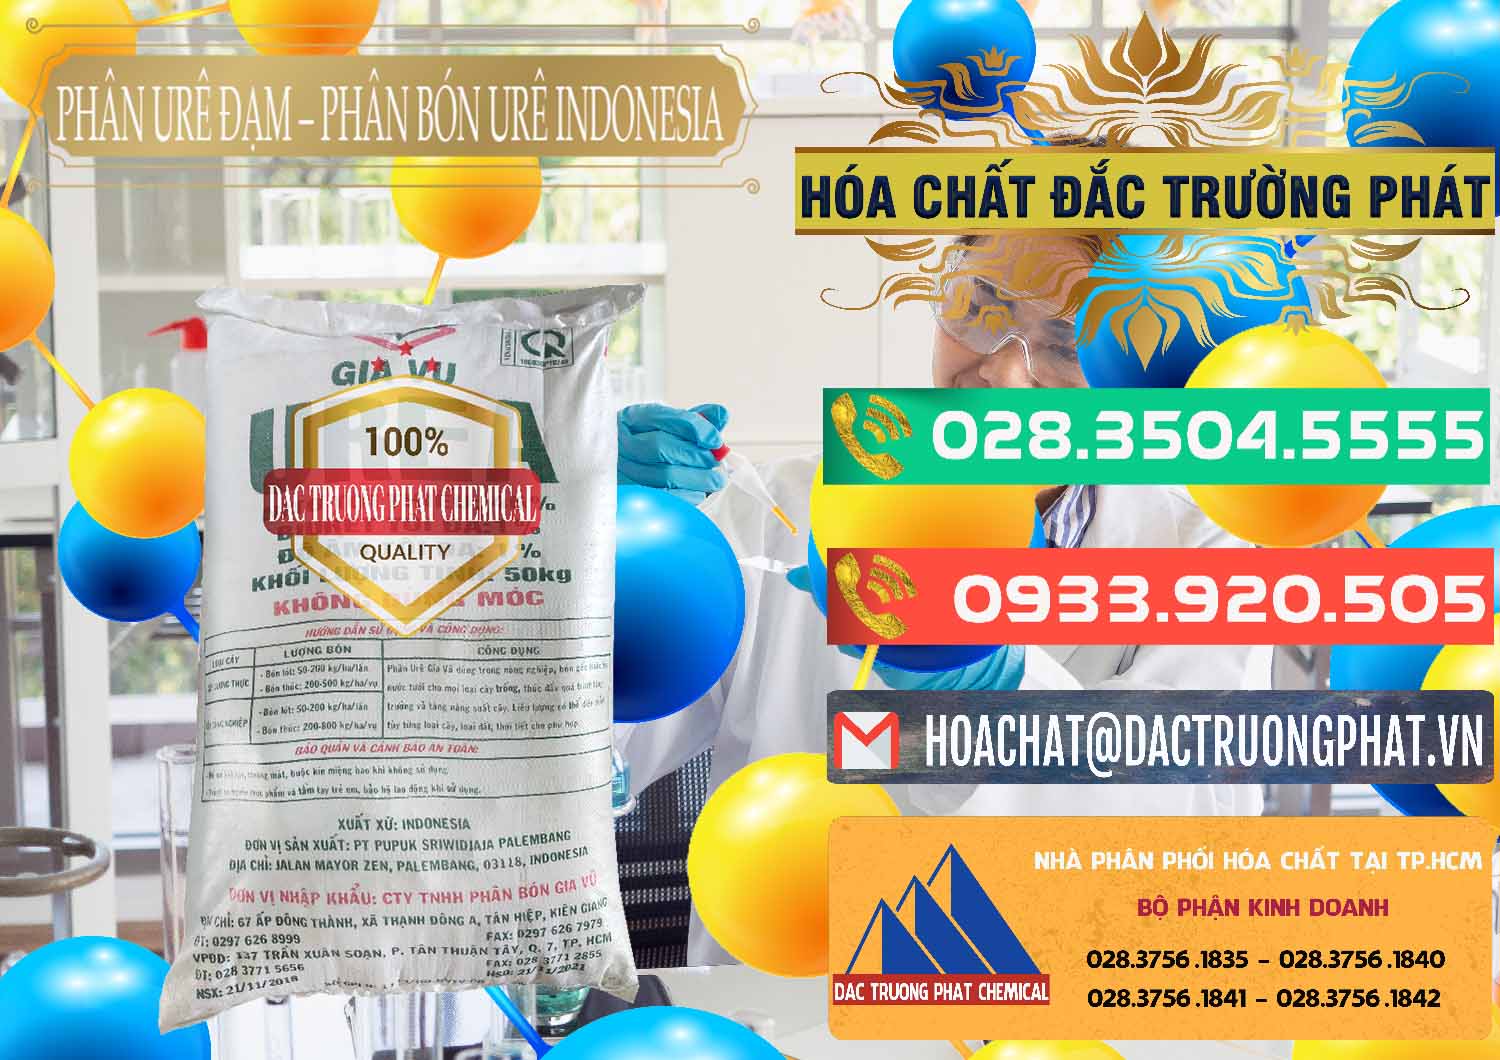 Cty bán - cung cấp Phân Urê Đạm – Phân Bón Urê Indonesia - 0194 - Chuyên bán và phân phối hóa chất tại TP.HCM - congtyhoachat.com.vn